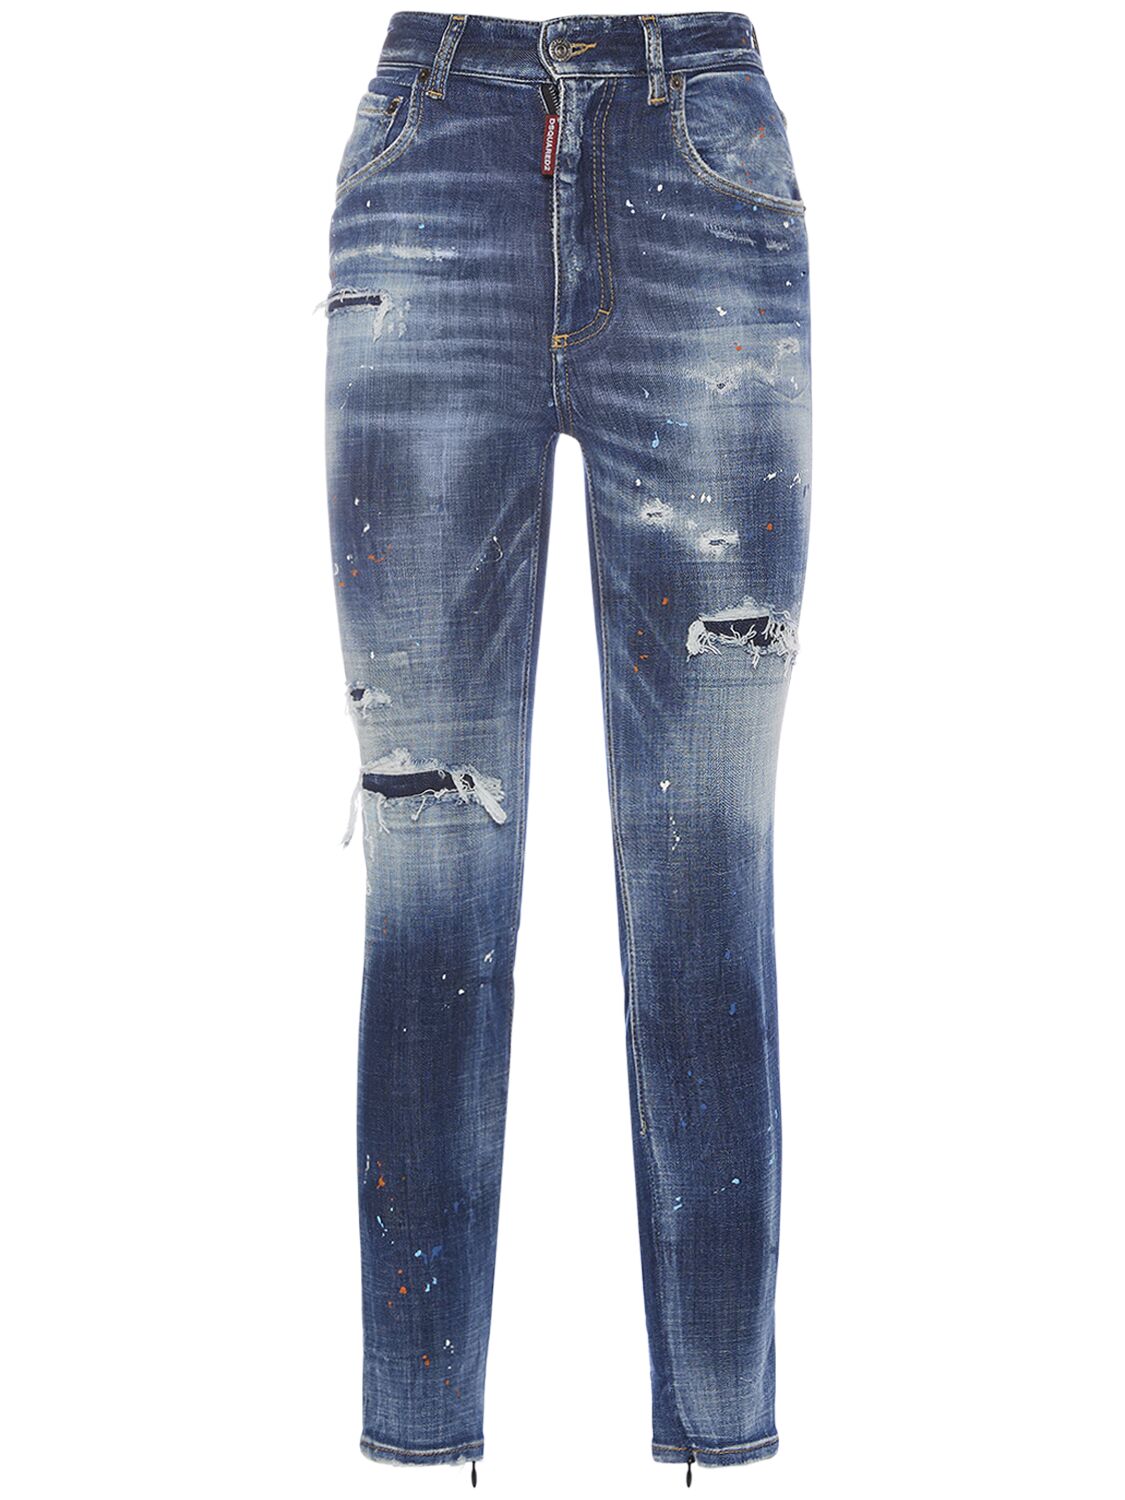 Twiggy Distressed Skinny Jeans